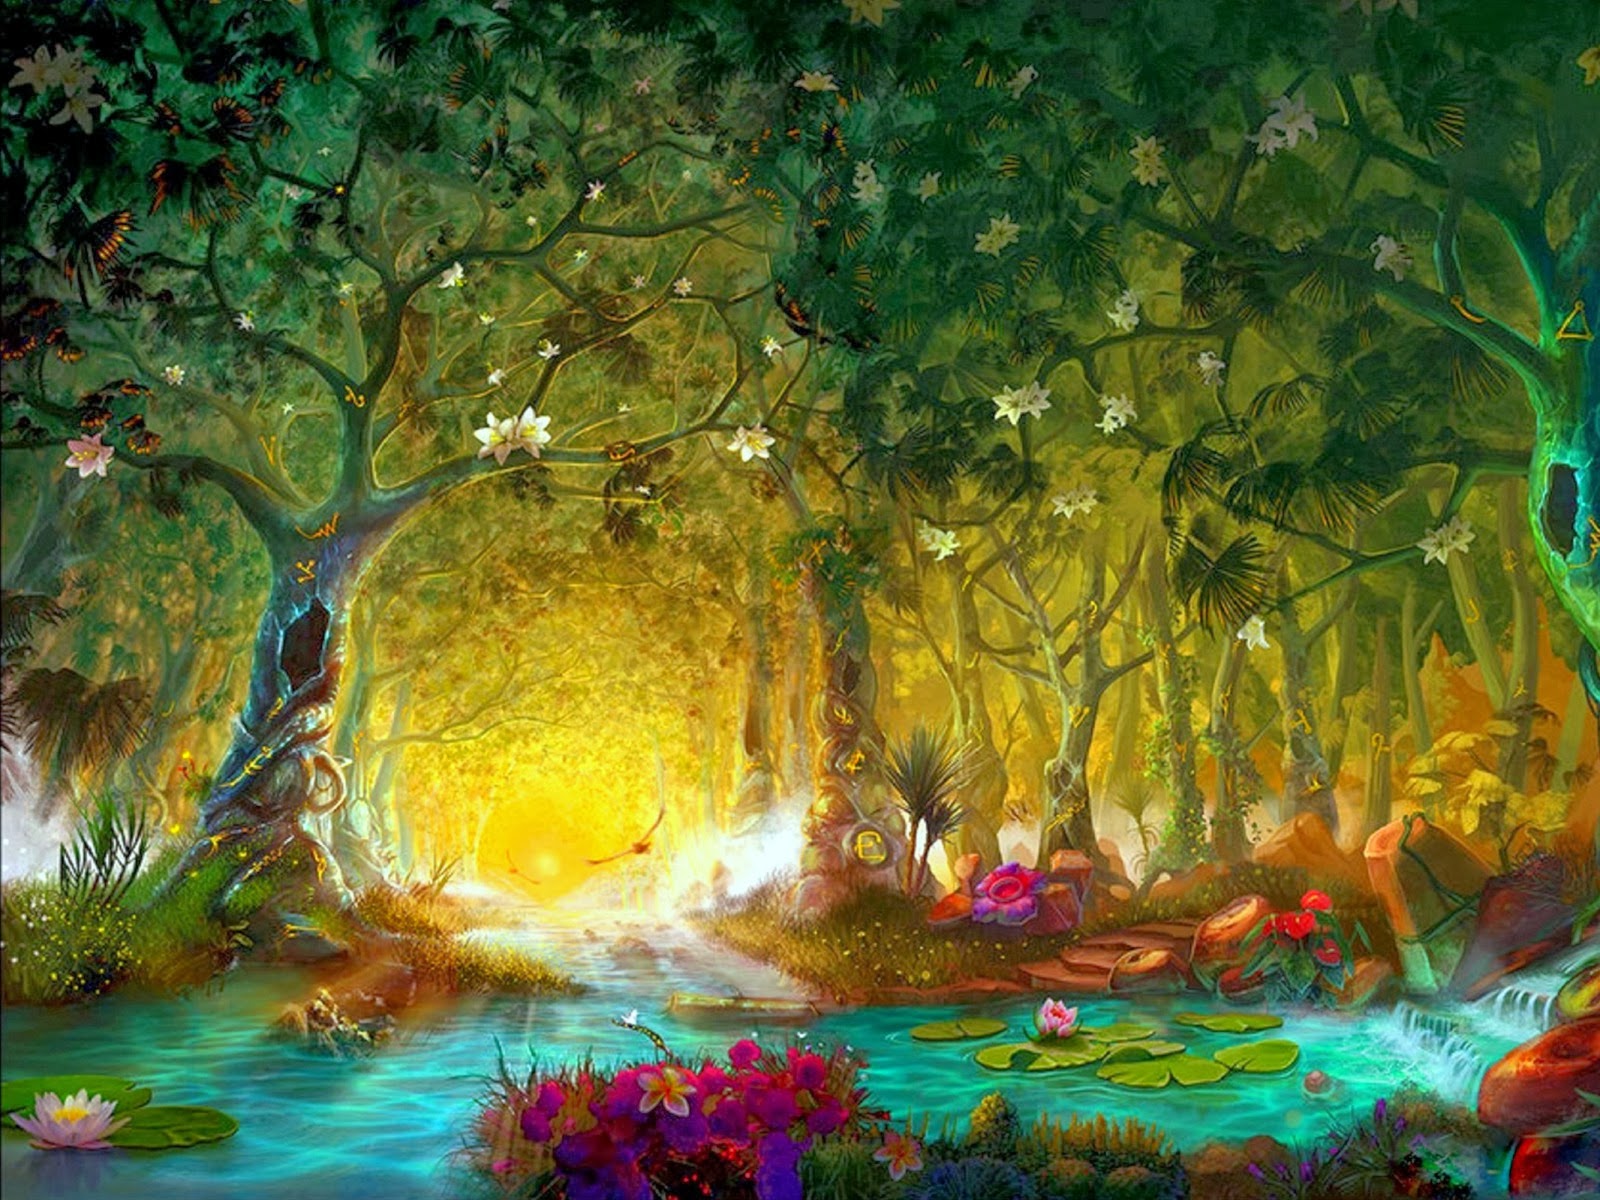 アリスと百合の不思議な世界 美しい 幻想的な画像 イラスト 壁紙 魔法の森 Magic Forest